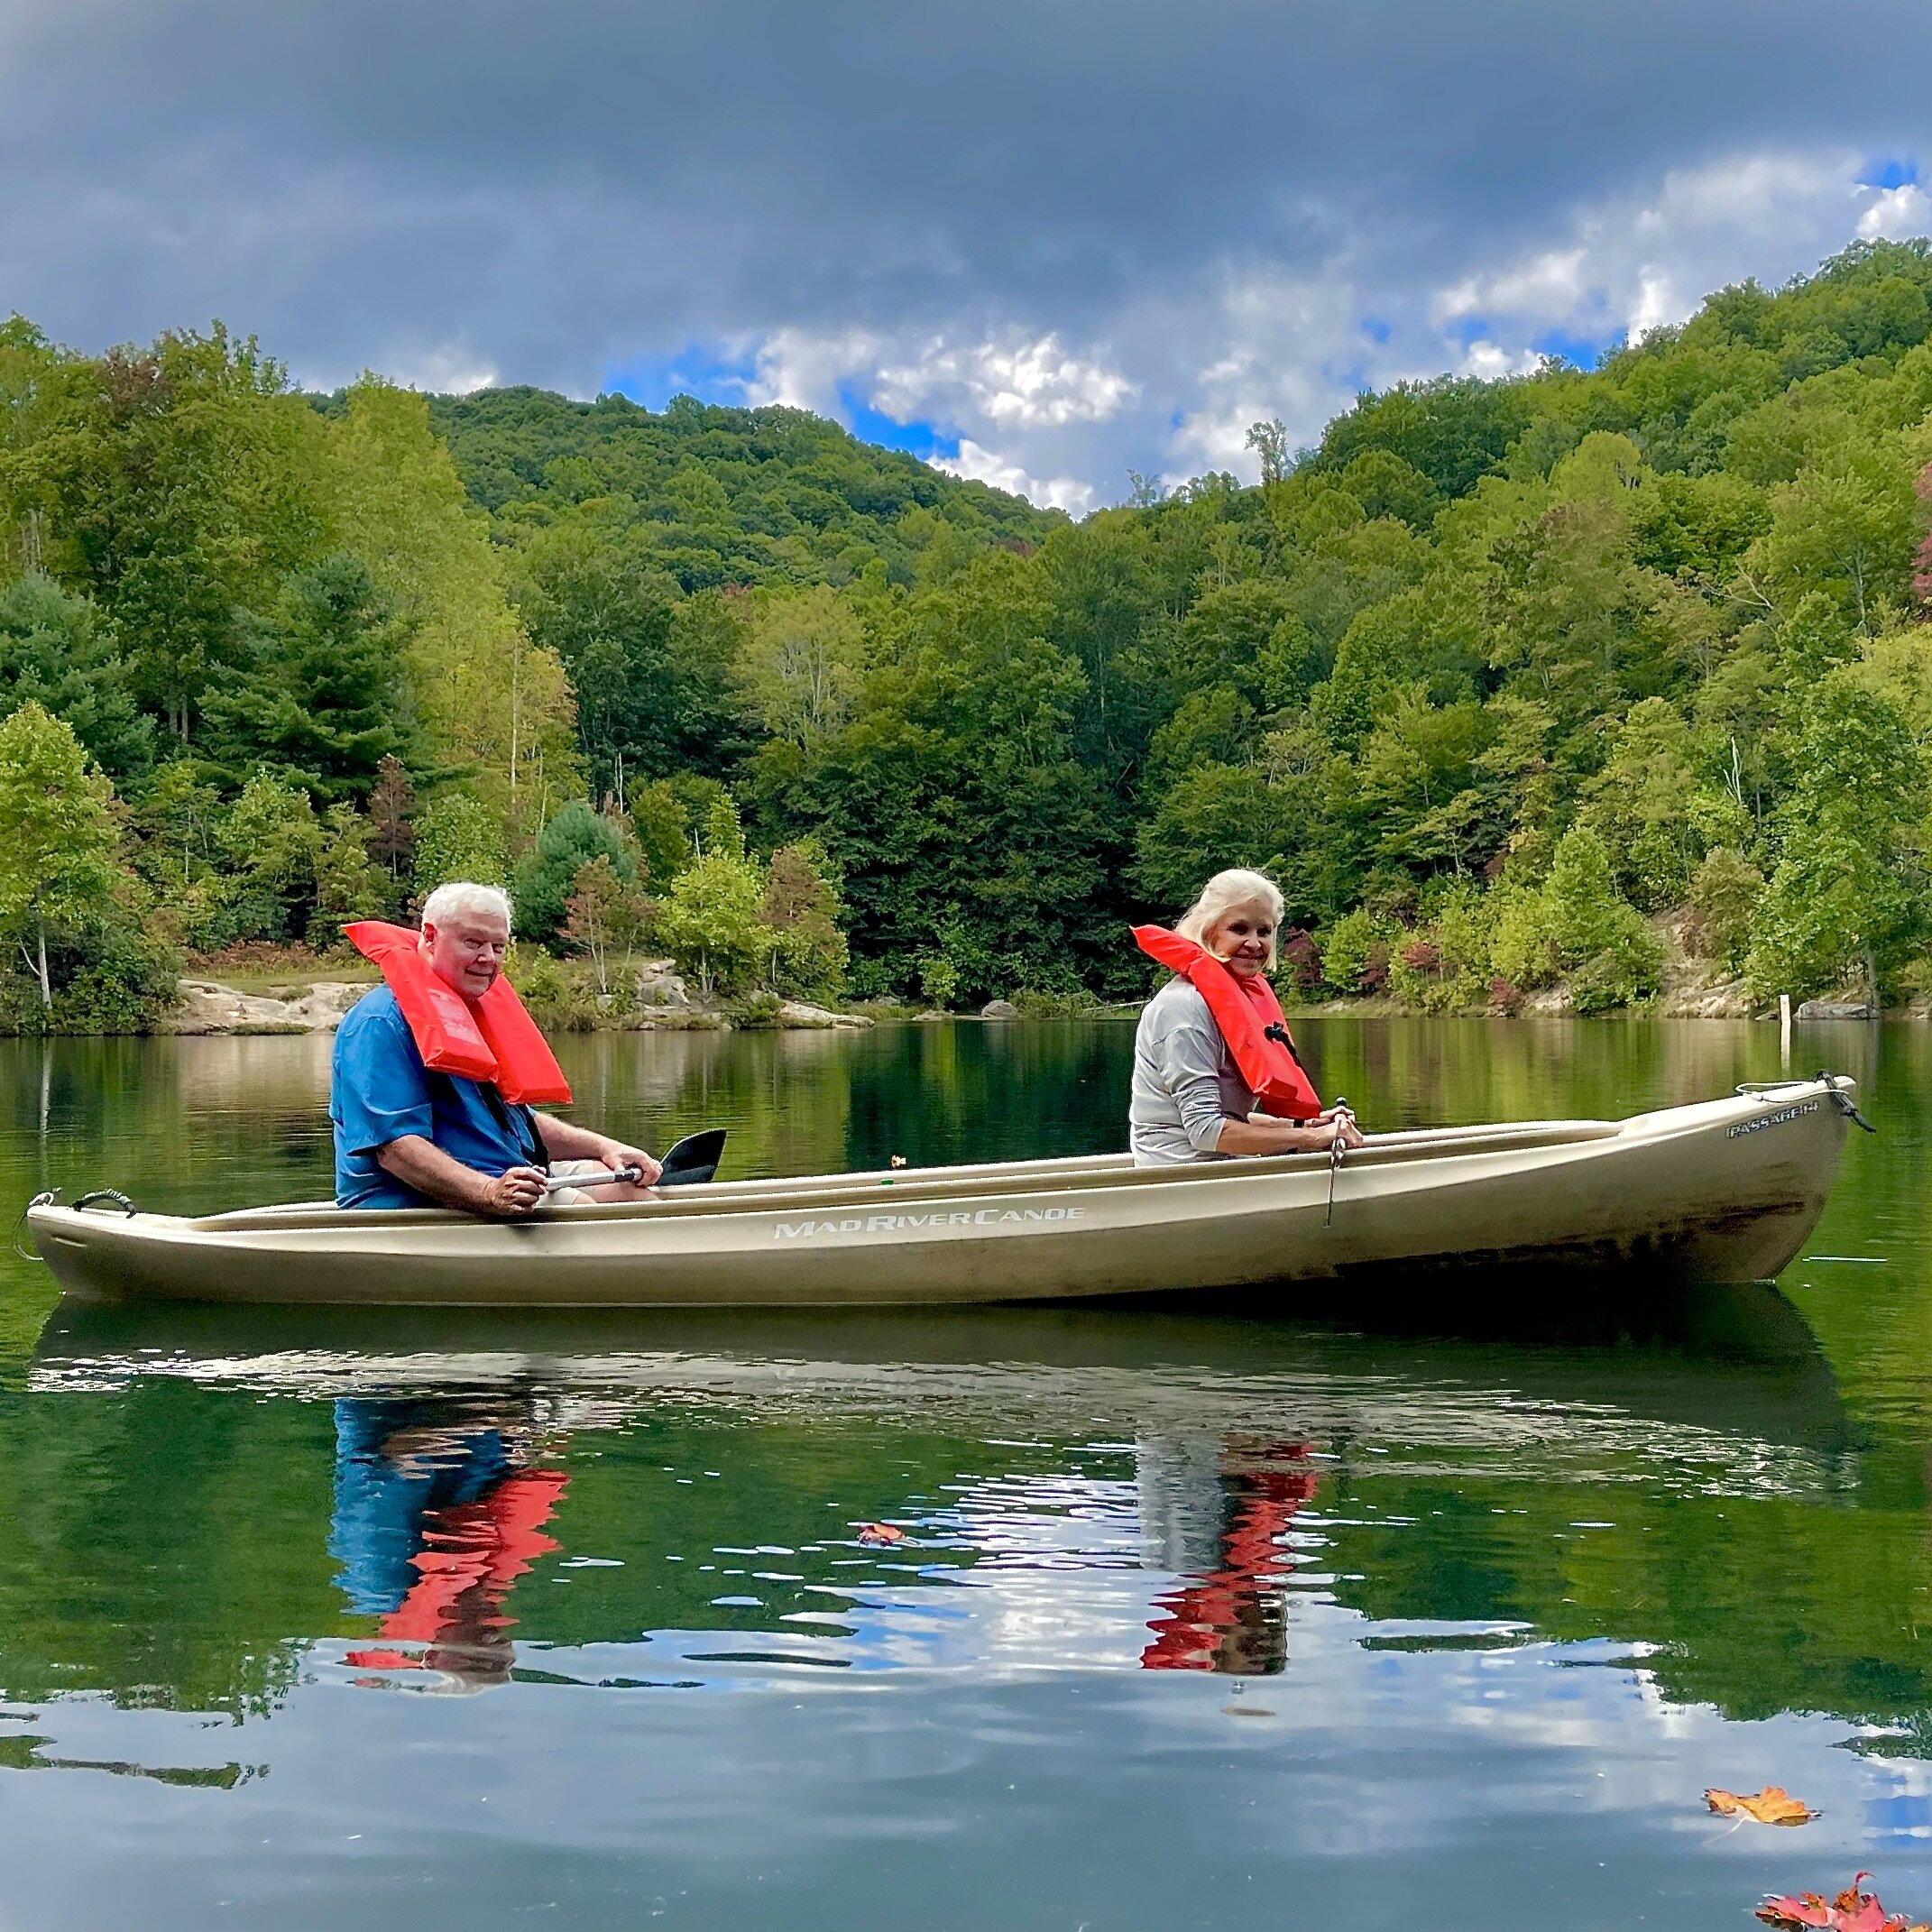 Couple canoeing on lake .jpeg